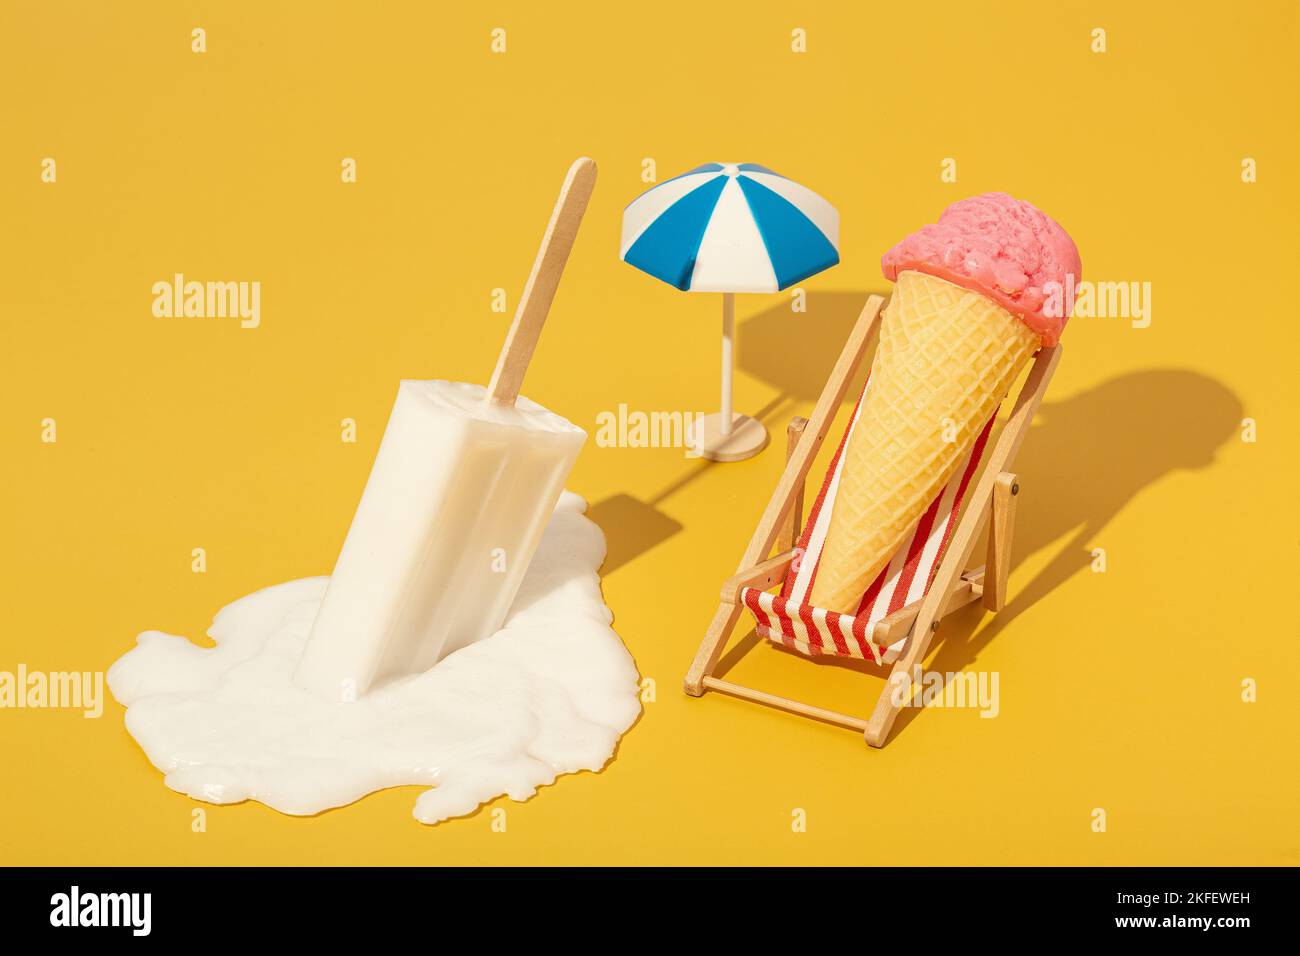 Crème glacée dans un hamac sur un fond coloré, concept de relaxation d'été photo de haute qualité Banque D'Images